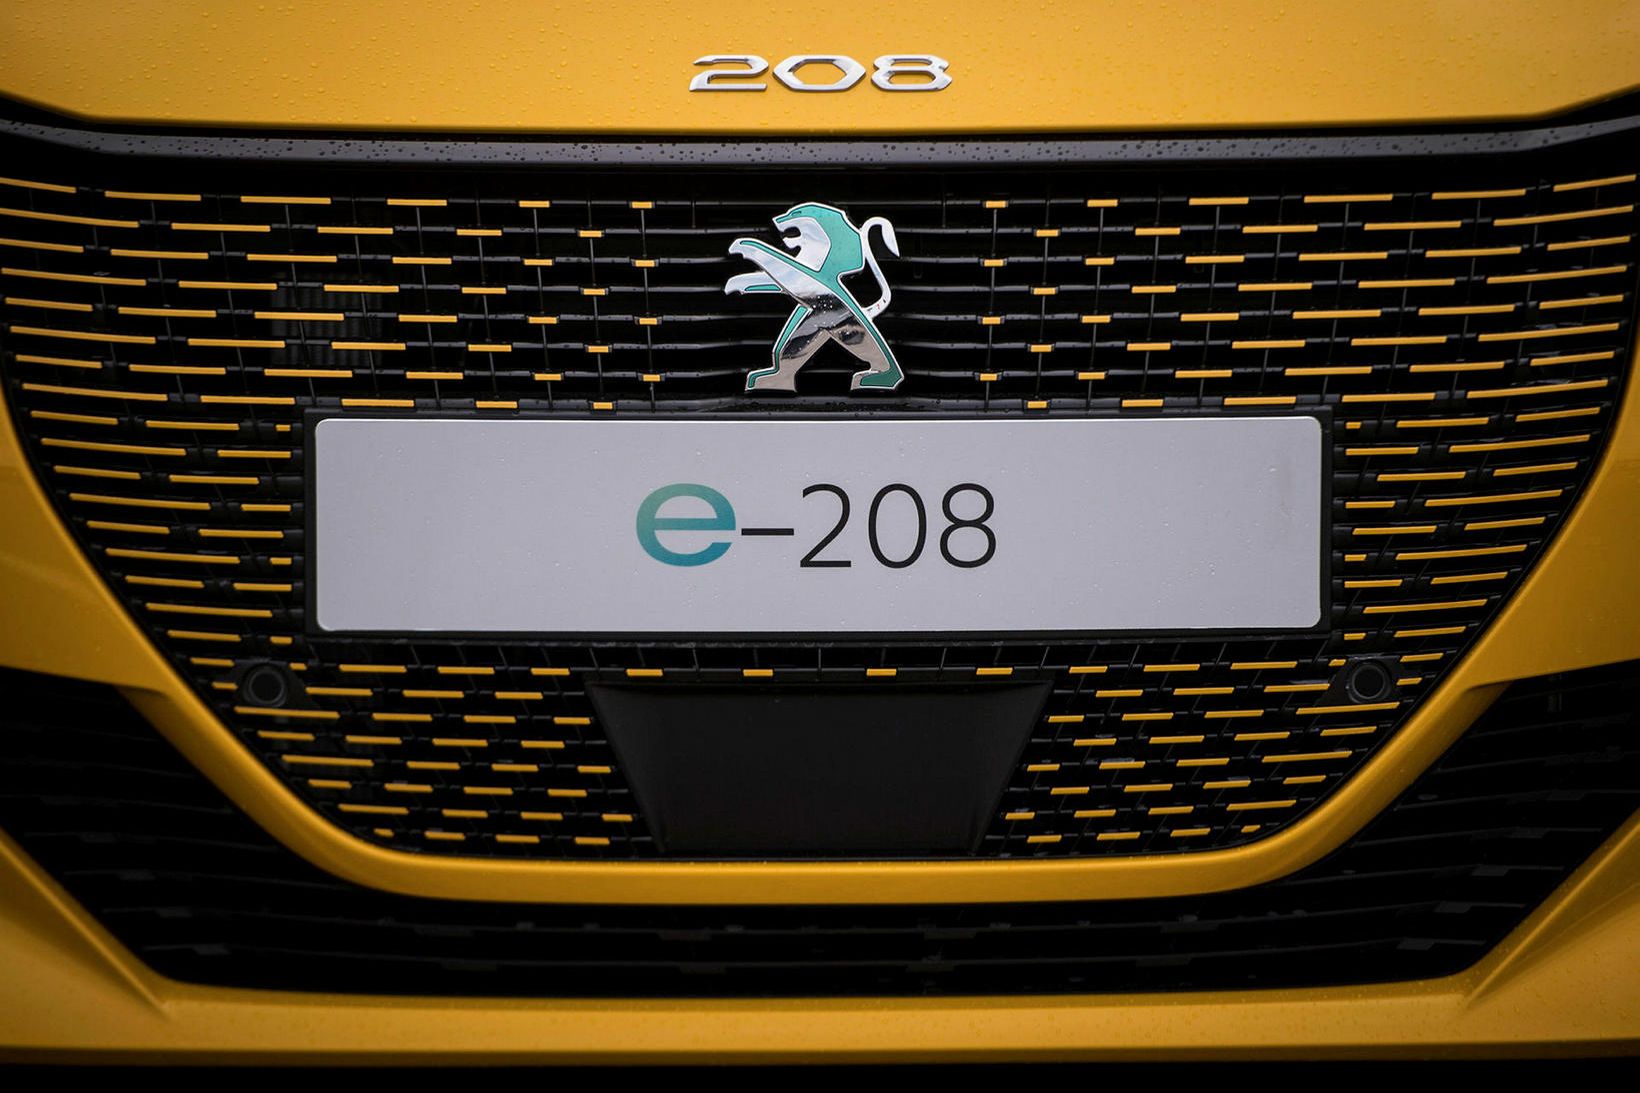 Peugeot e-208 rafbíllinn er nýr í rafbílaflórunni.